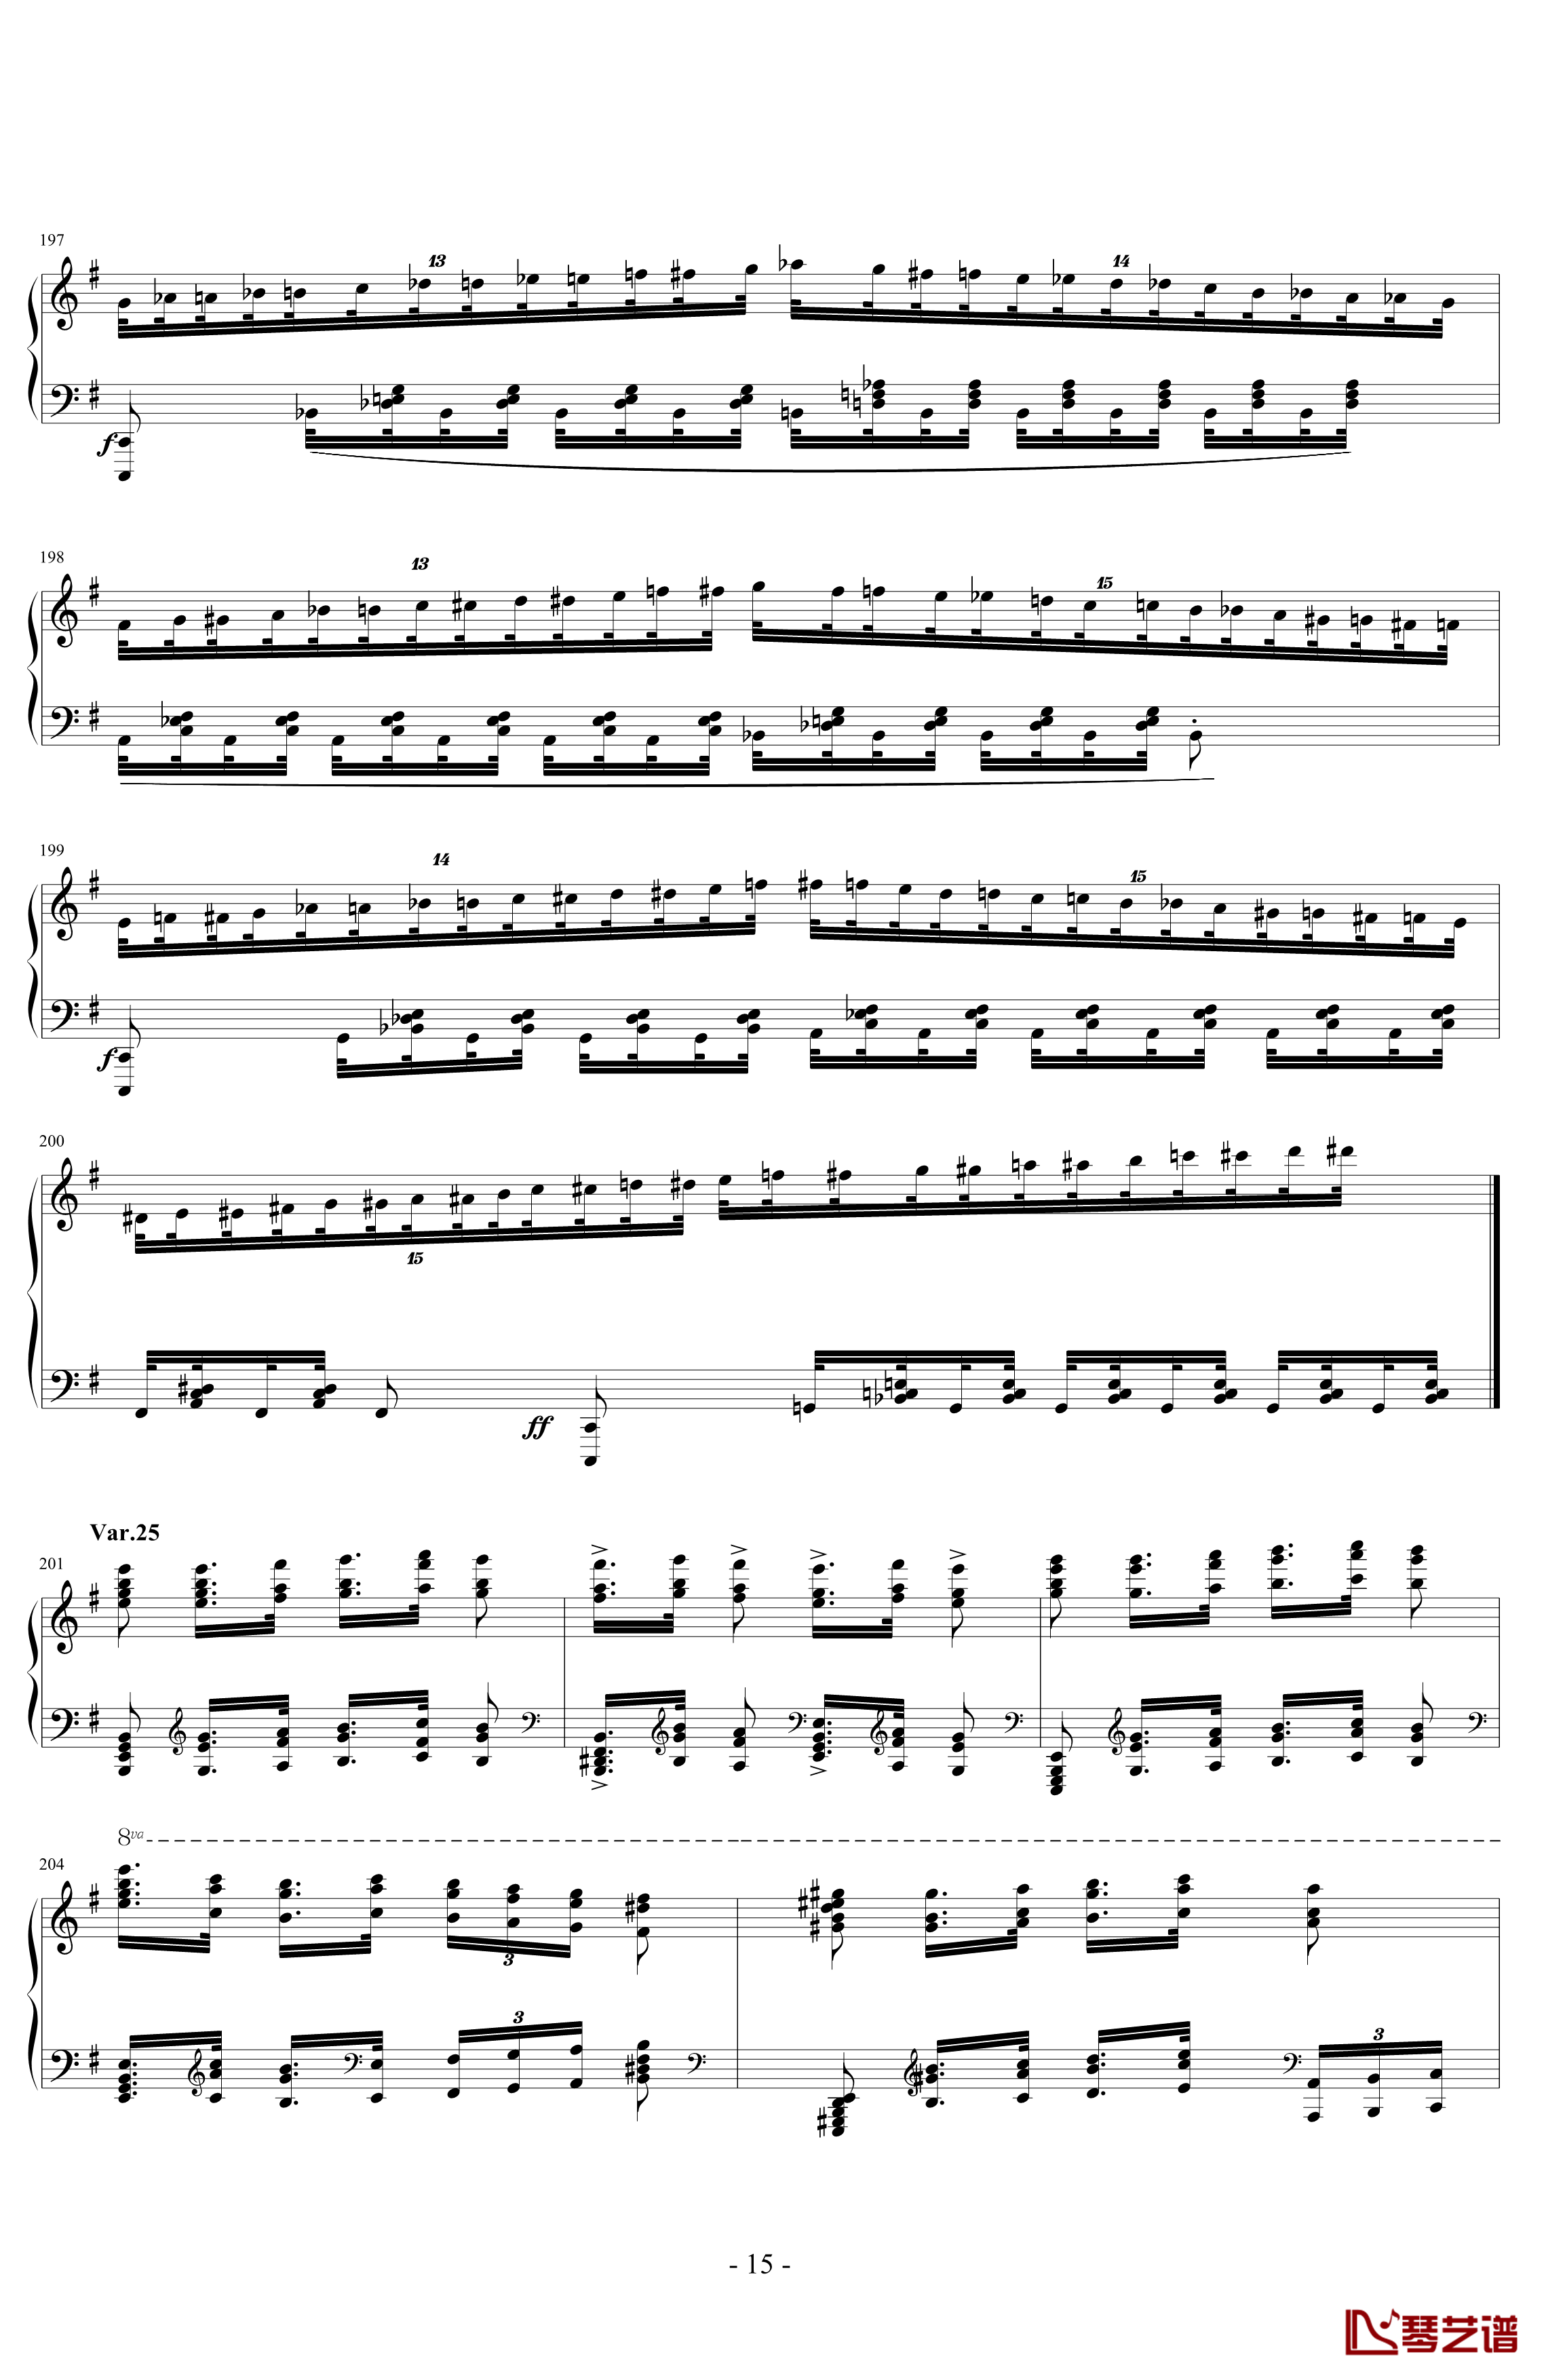 阿尔坎Op.39 No.12 变奏曲钢琴谱-Charles-Valentin Alkan15